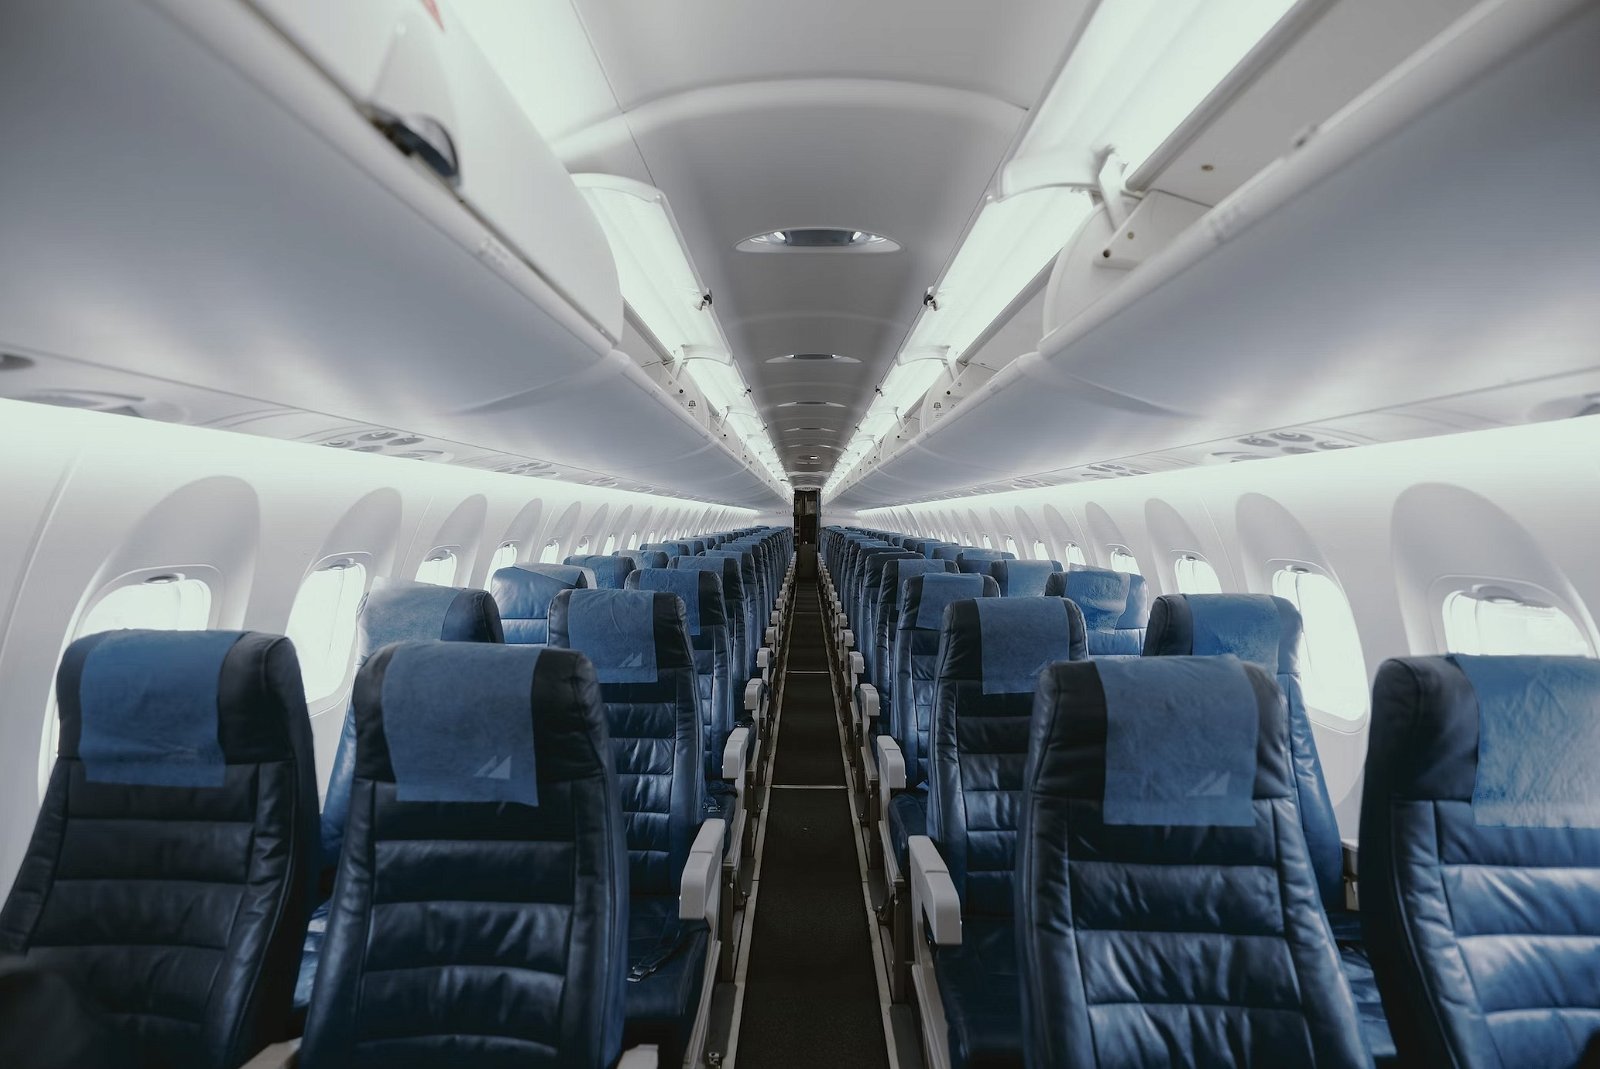 WiFi gratis en el avión: listado de compañías y cómo contratarlo